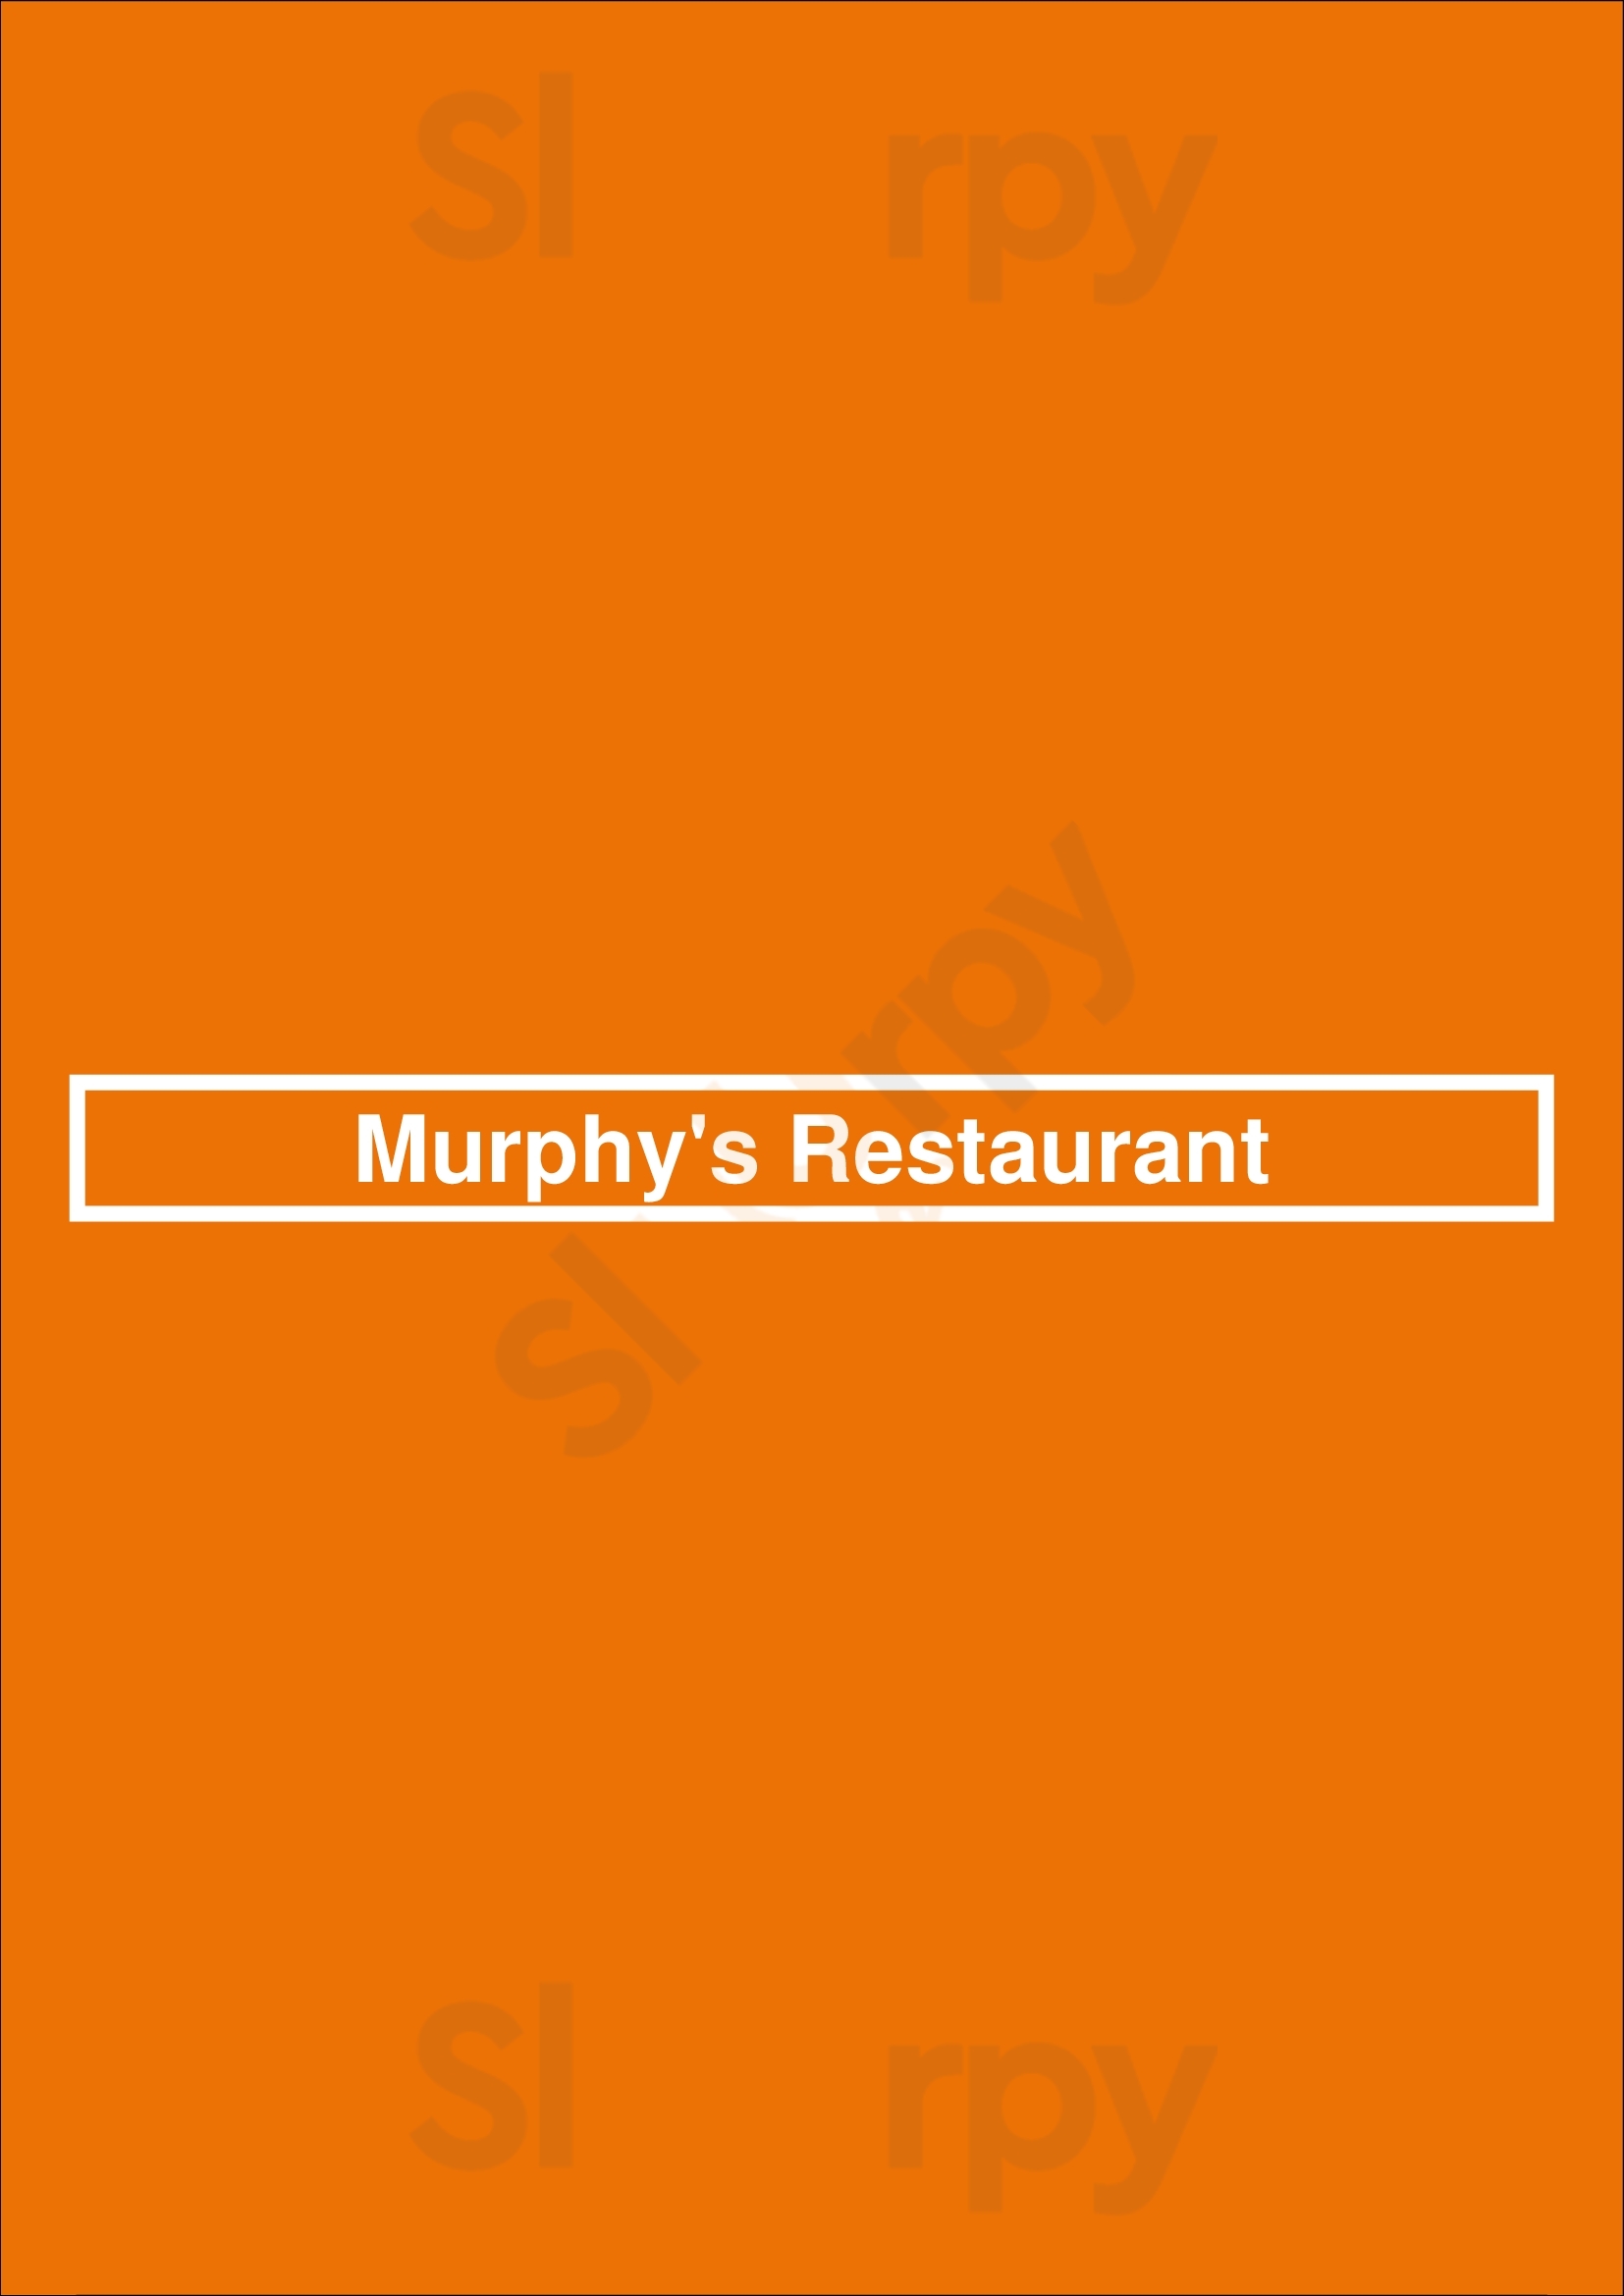 Murphy's Restaurant Atlanta Menu - 1